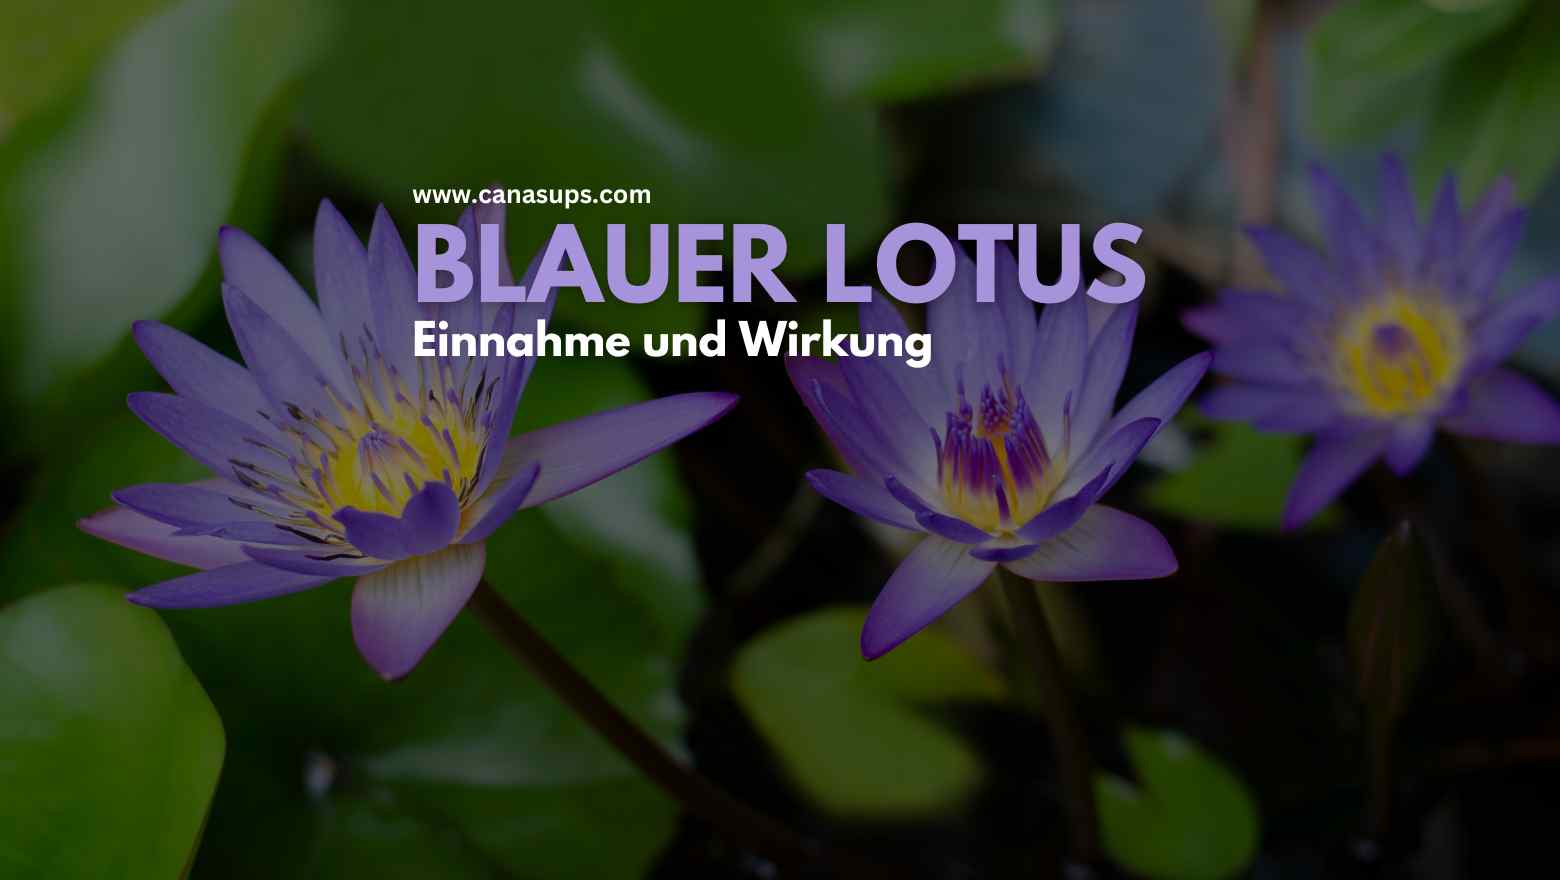 Blauer Lotus - Einnahme und Wirkung